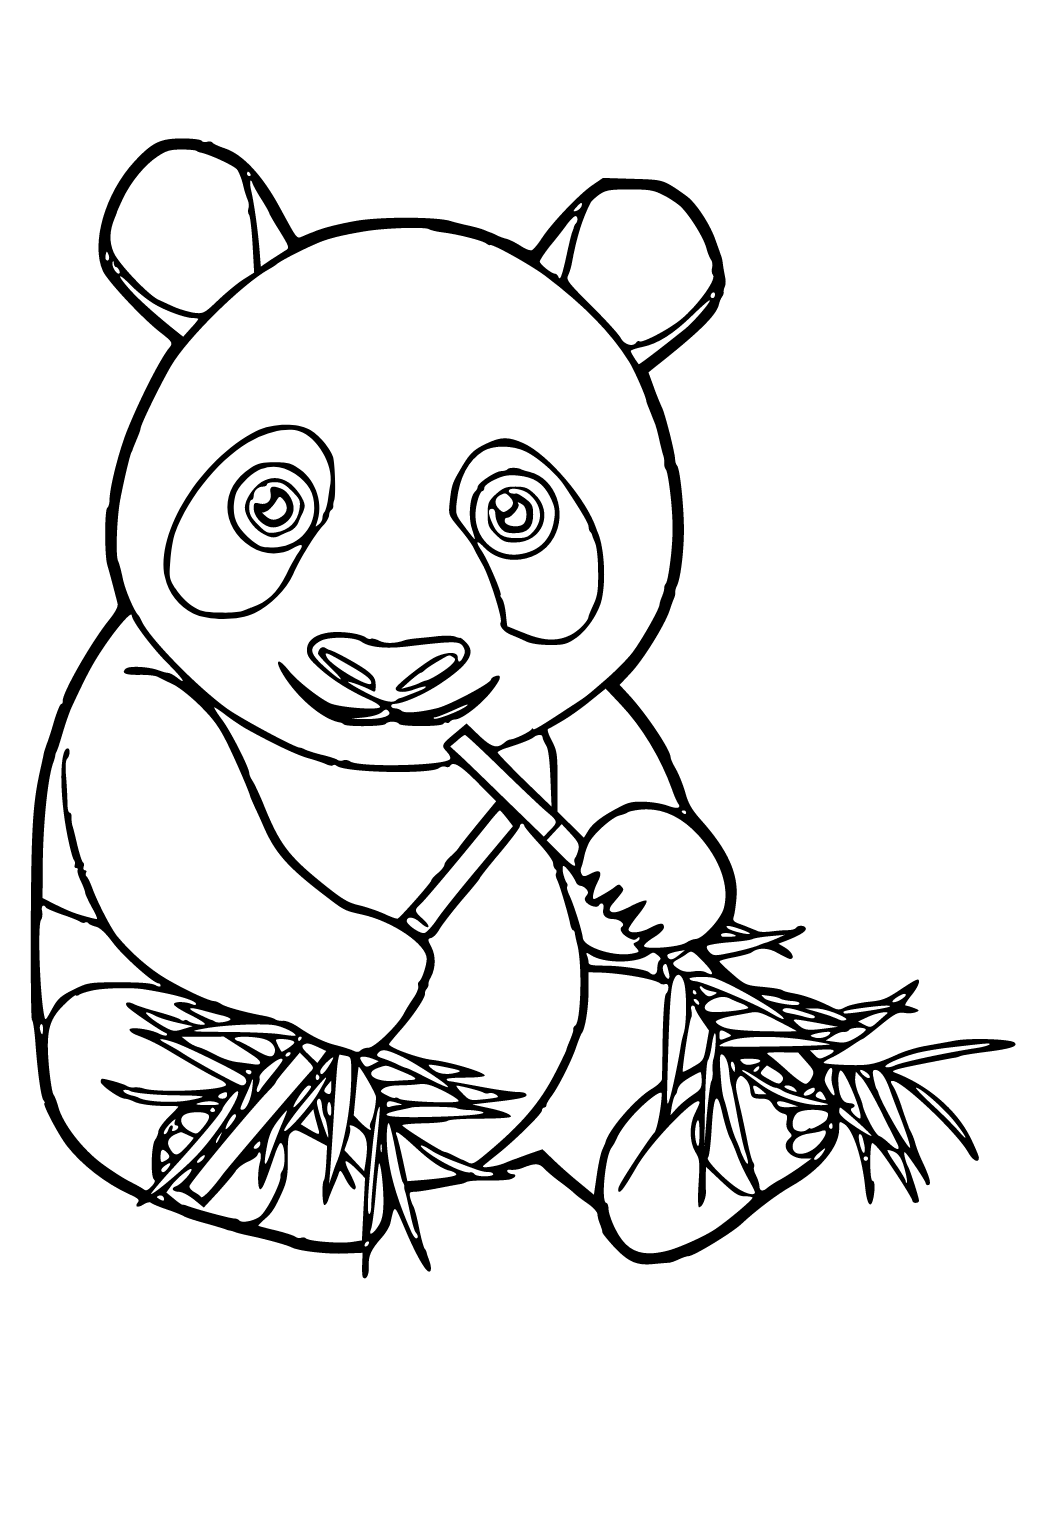 Desenho de Panda-vermelho realista para colorir